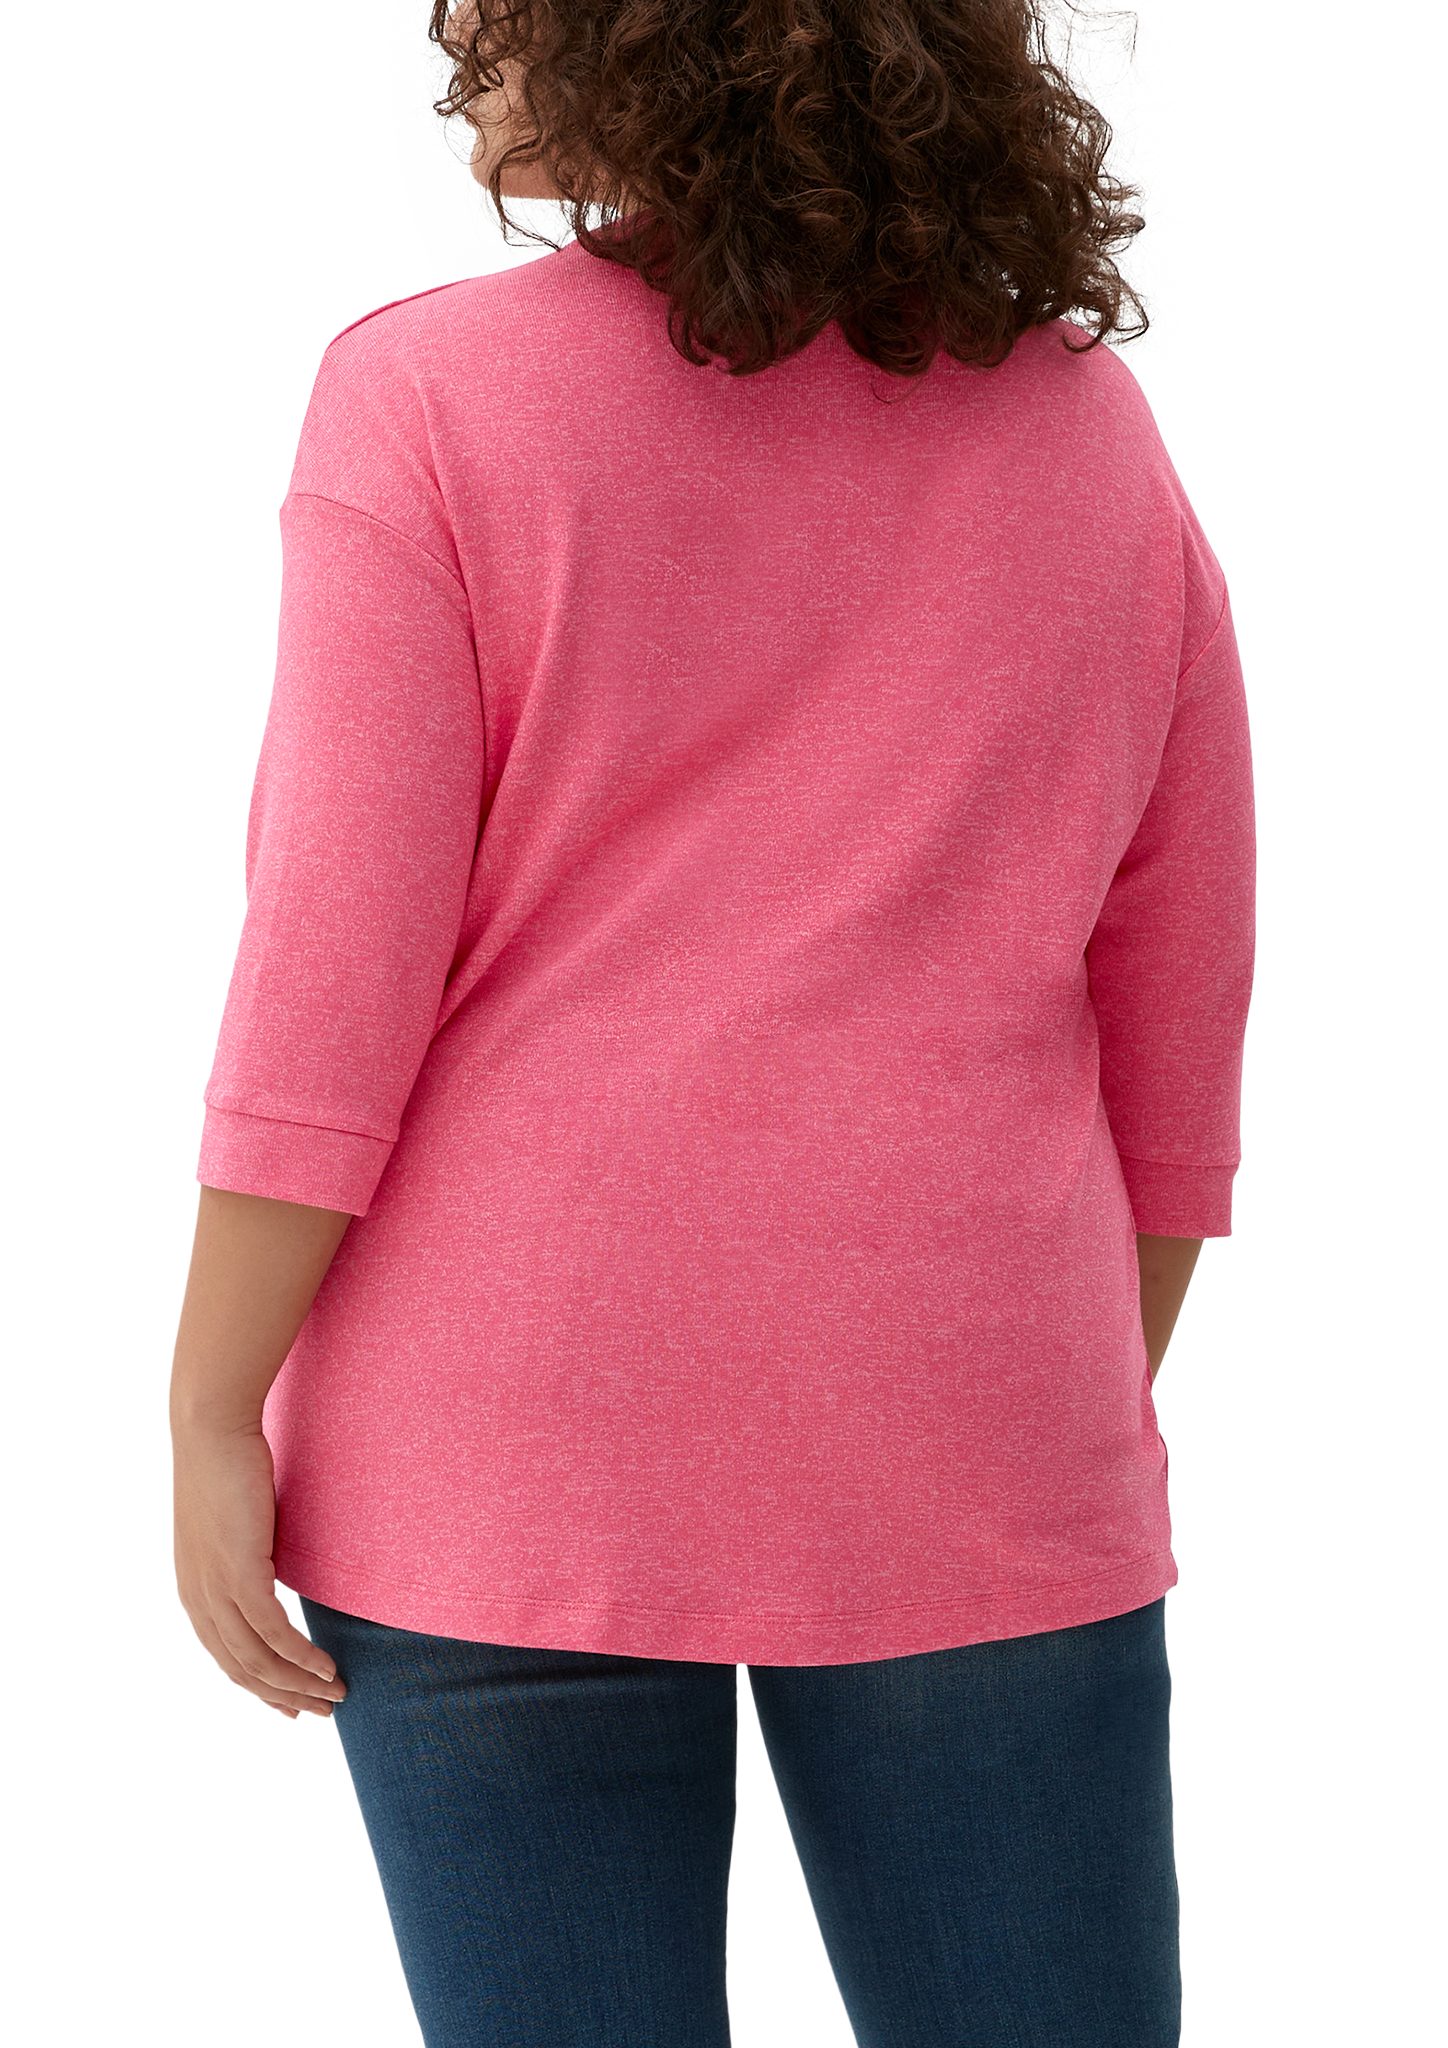 mit TRIANGLE Stickerei T-Shirt V-Ausschnitt pink 3/4-Arm-Shirt